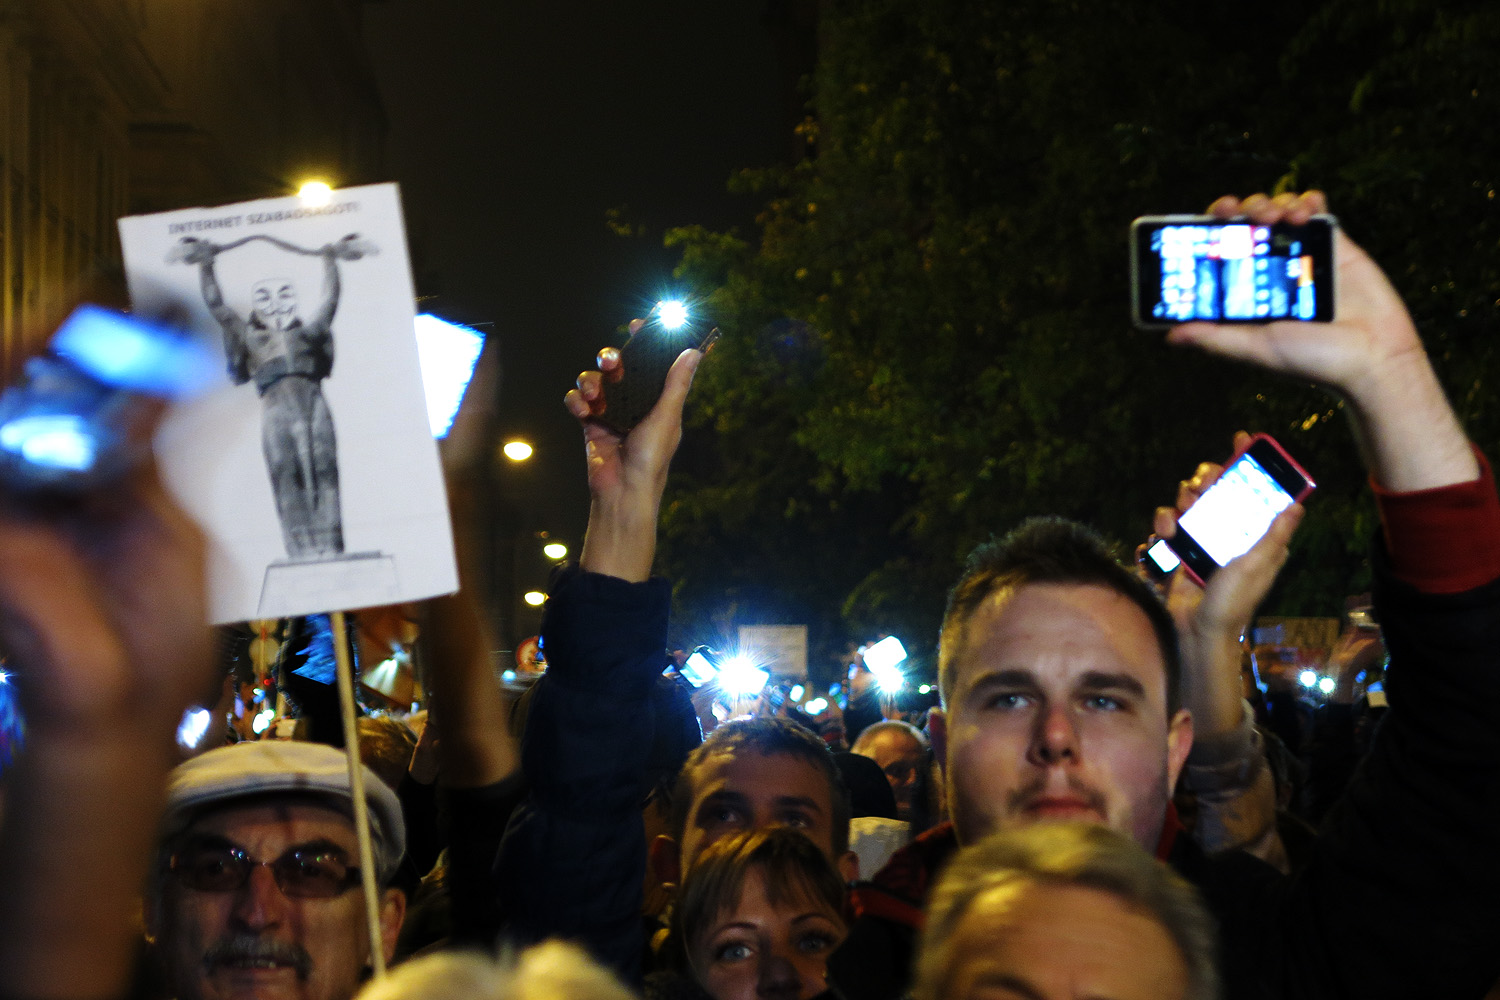 Húngaros protestam contra nova cobrança de internet proposta pelo governo 